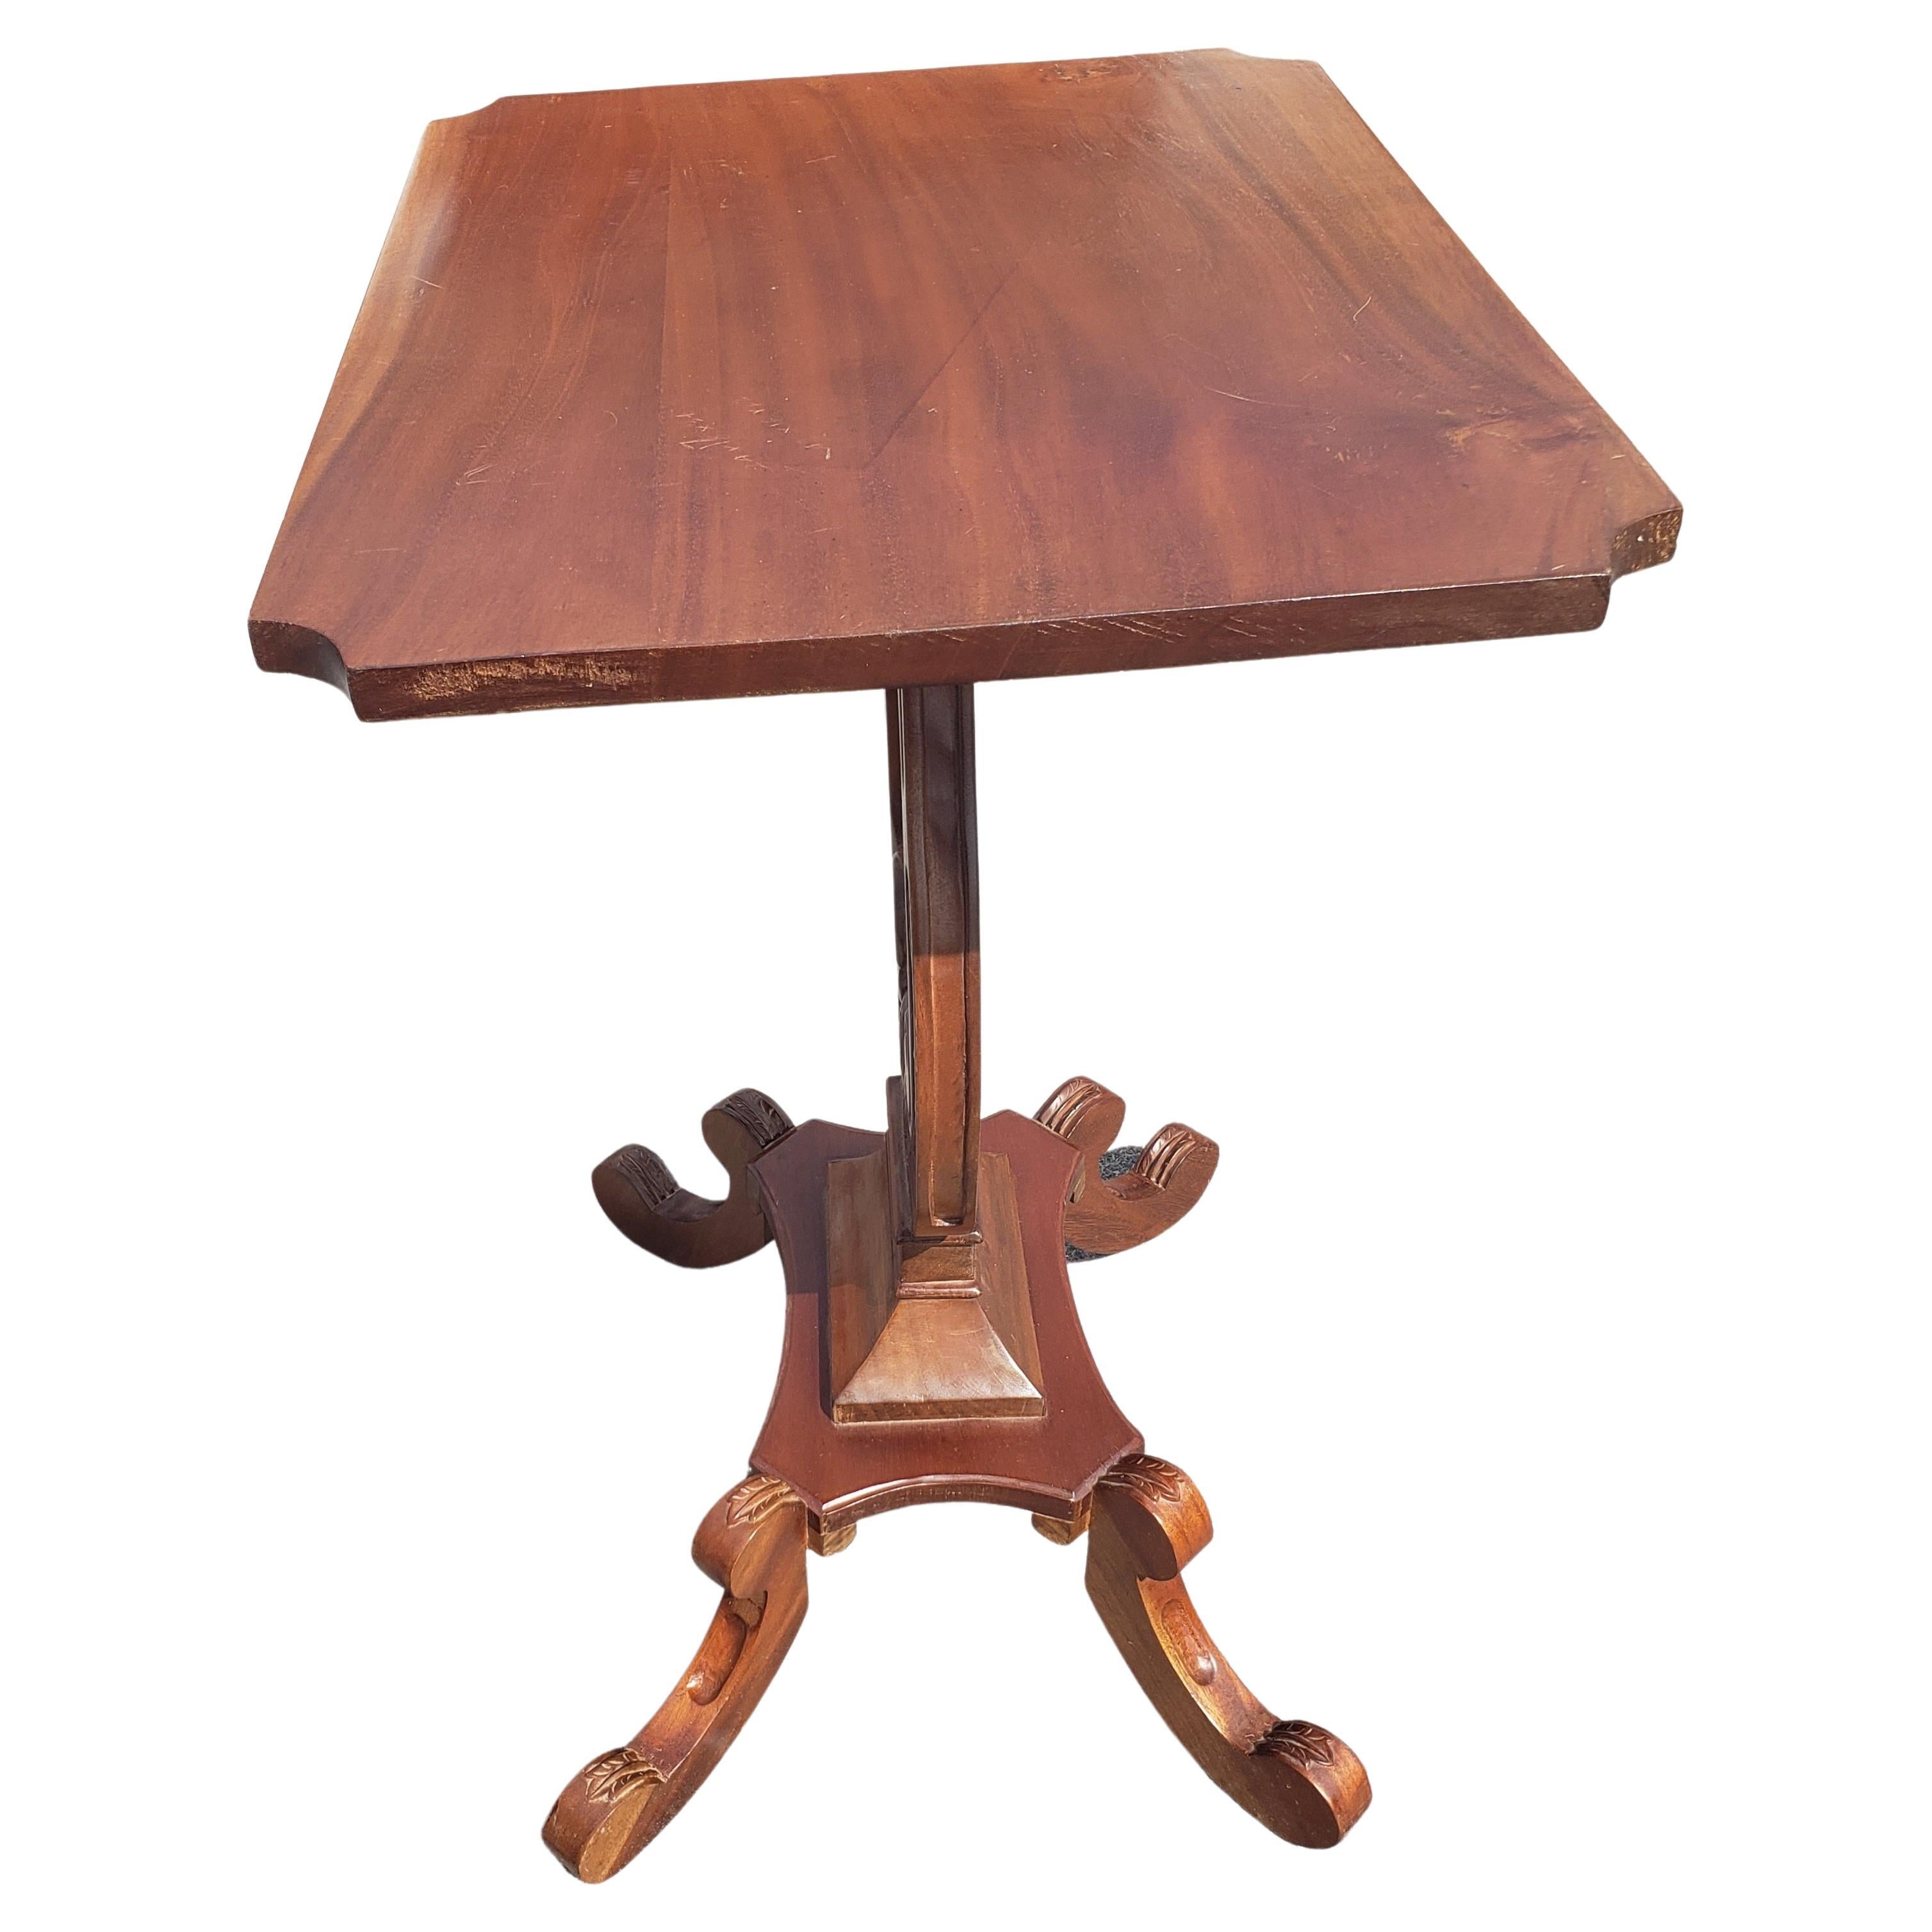 Beistelltisch aus amerikanischem Empire-Mahagoni mit rechteckigem Leiersockel, 1940er Jahre 
Guter Vintage-Zustand. Der Tisch wurde in den letzten Jahren neu lackiert.
Maße: 21 